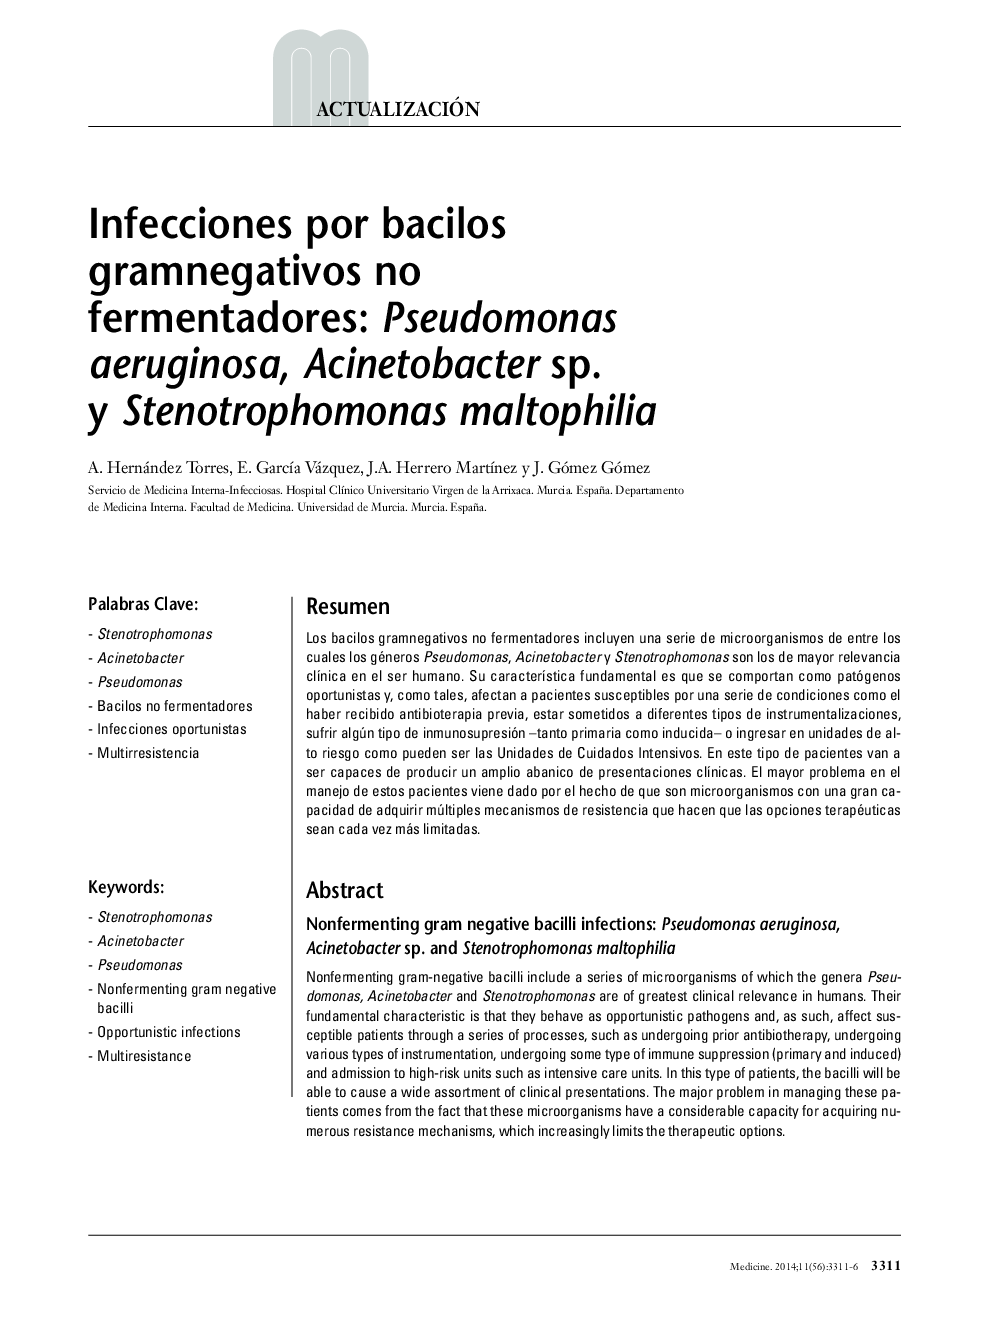 Infecciones por bacilos gramnegativos no fermentadores: Pseudomonas aeruginosa, Acinetobacter sp. y Stenotrophomonas maltophilia